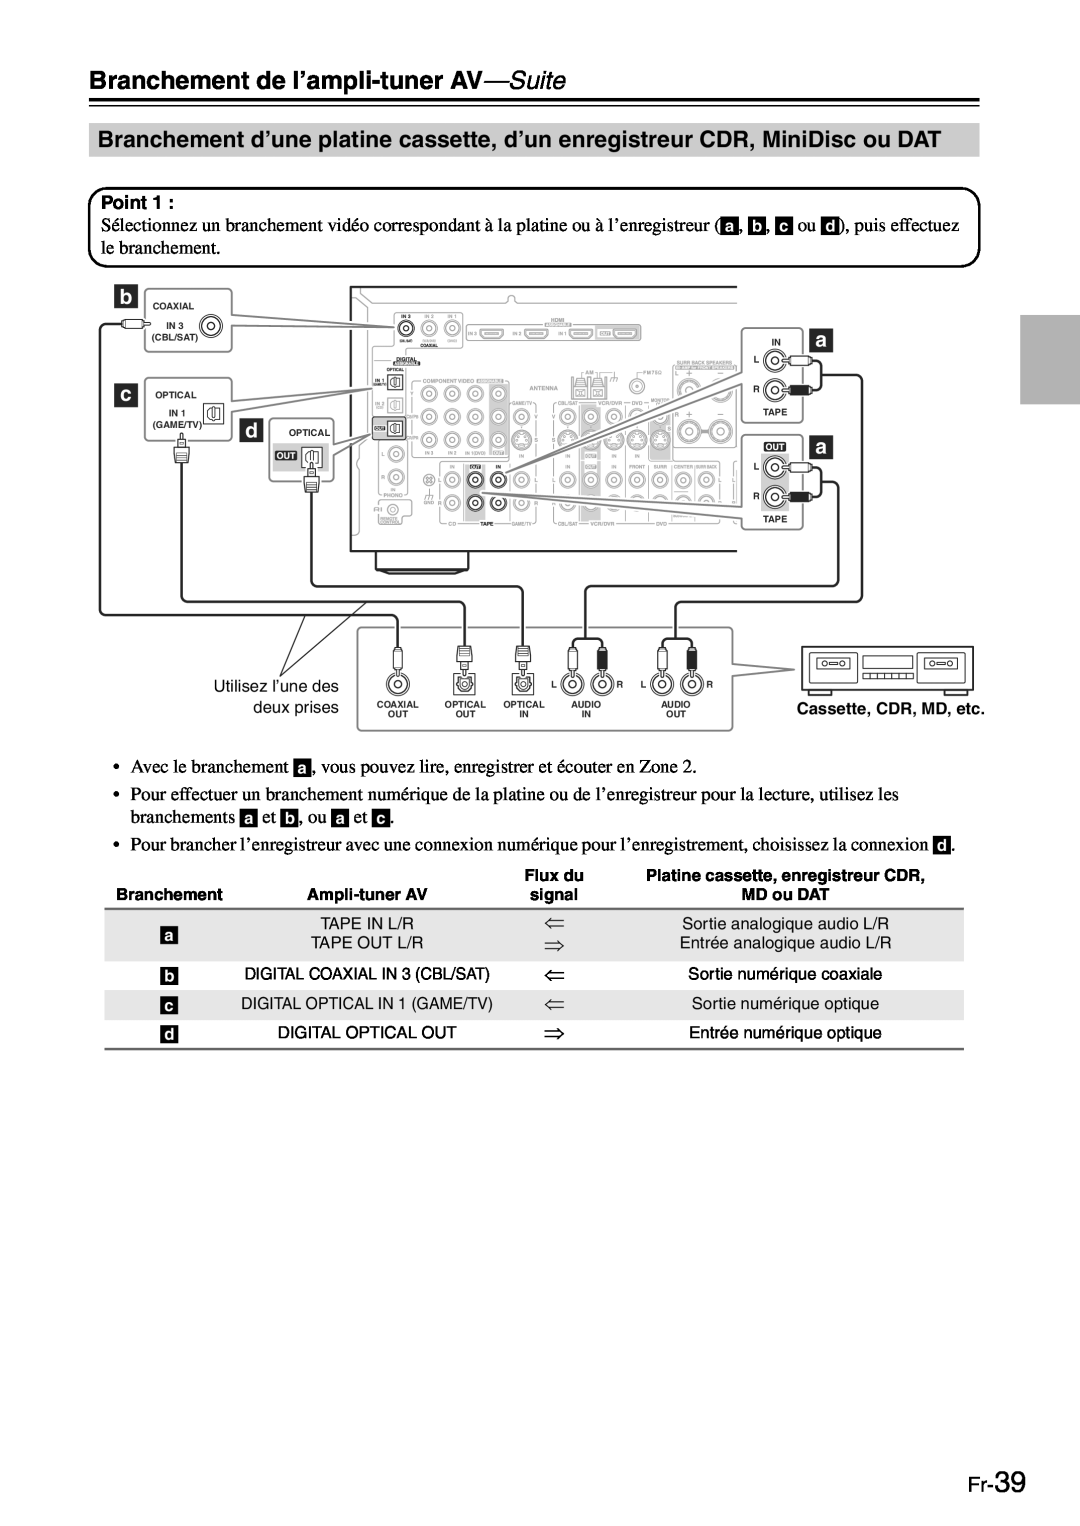 Onkyo TX-SR705 manual Fr-39, Branchement de l’ampli-tuner AV—Suite 